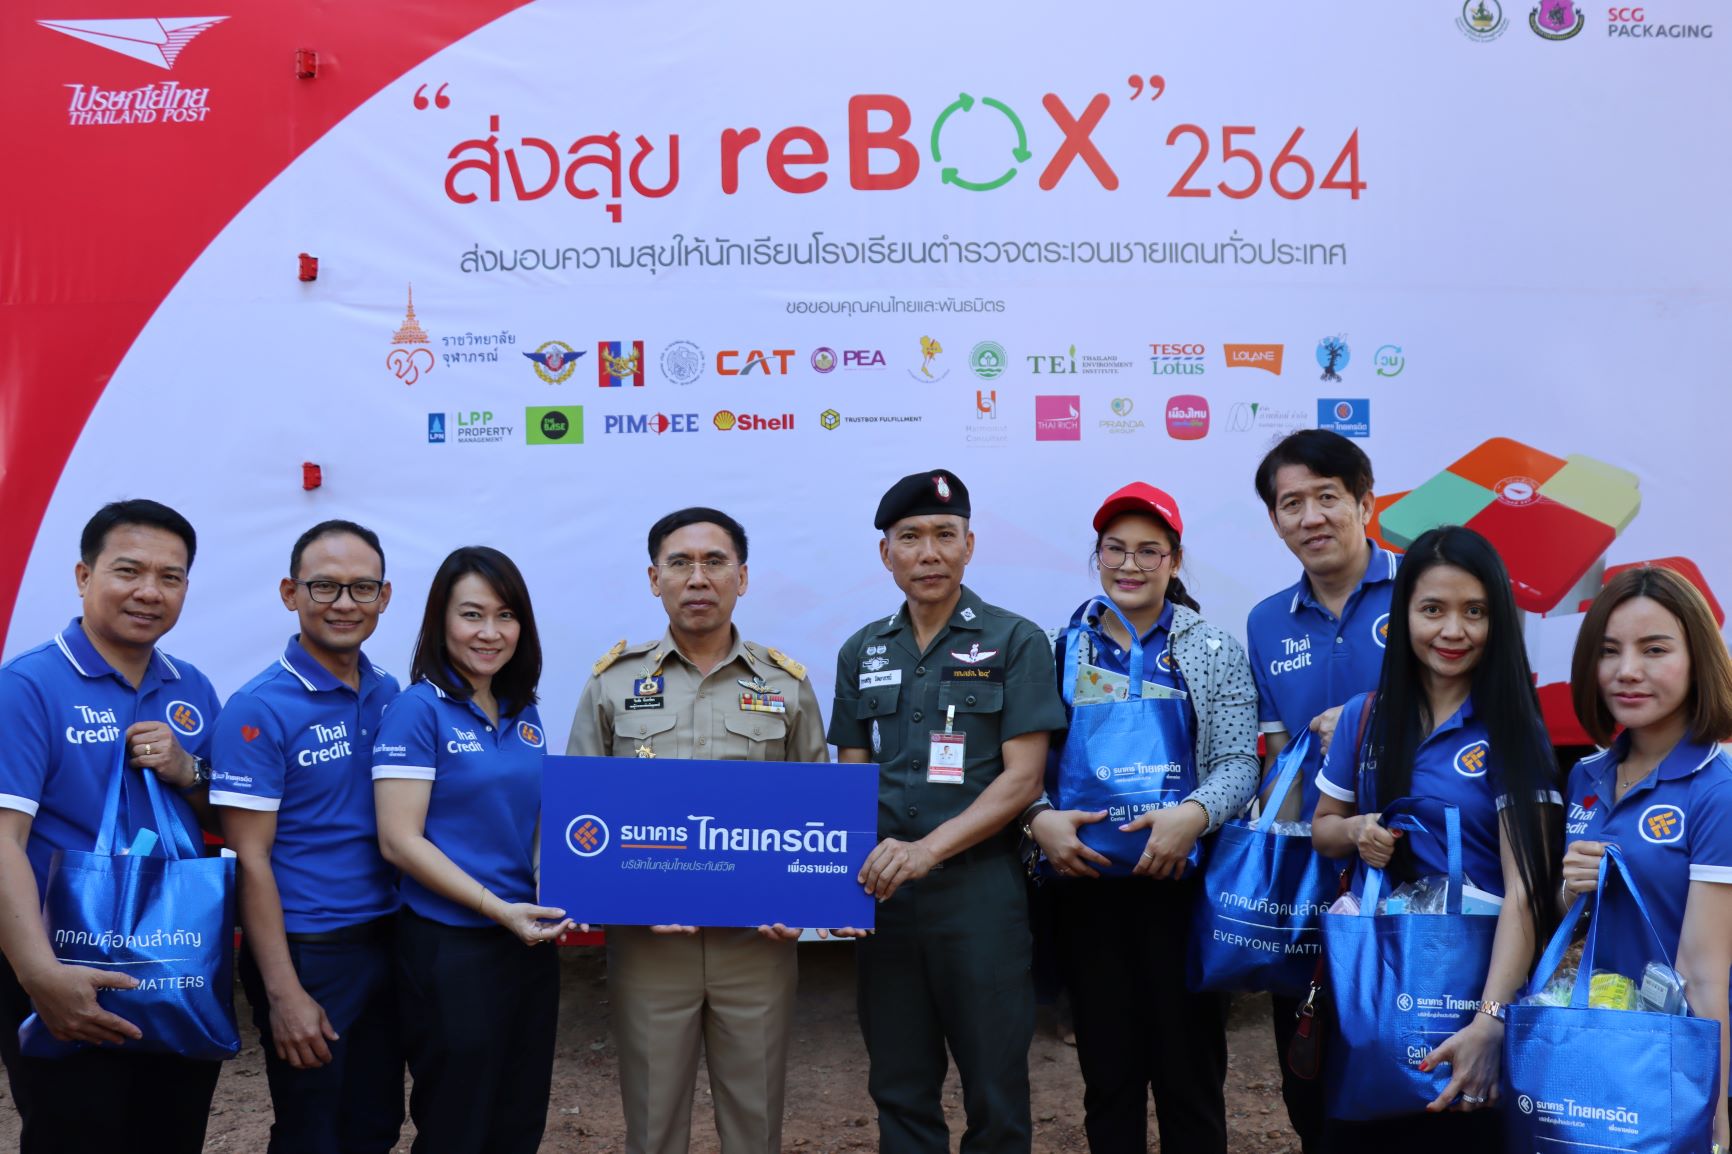 ธ.ไทยเครดิตฯ ร่วมกิจกรรม “ส่งสุข reBOX 2564” ไปรษณีย์ไทย บริจาคอุปกรณ์การศึกษา